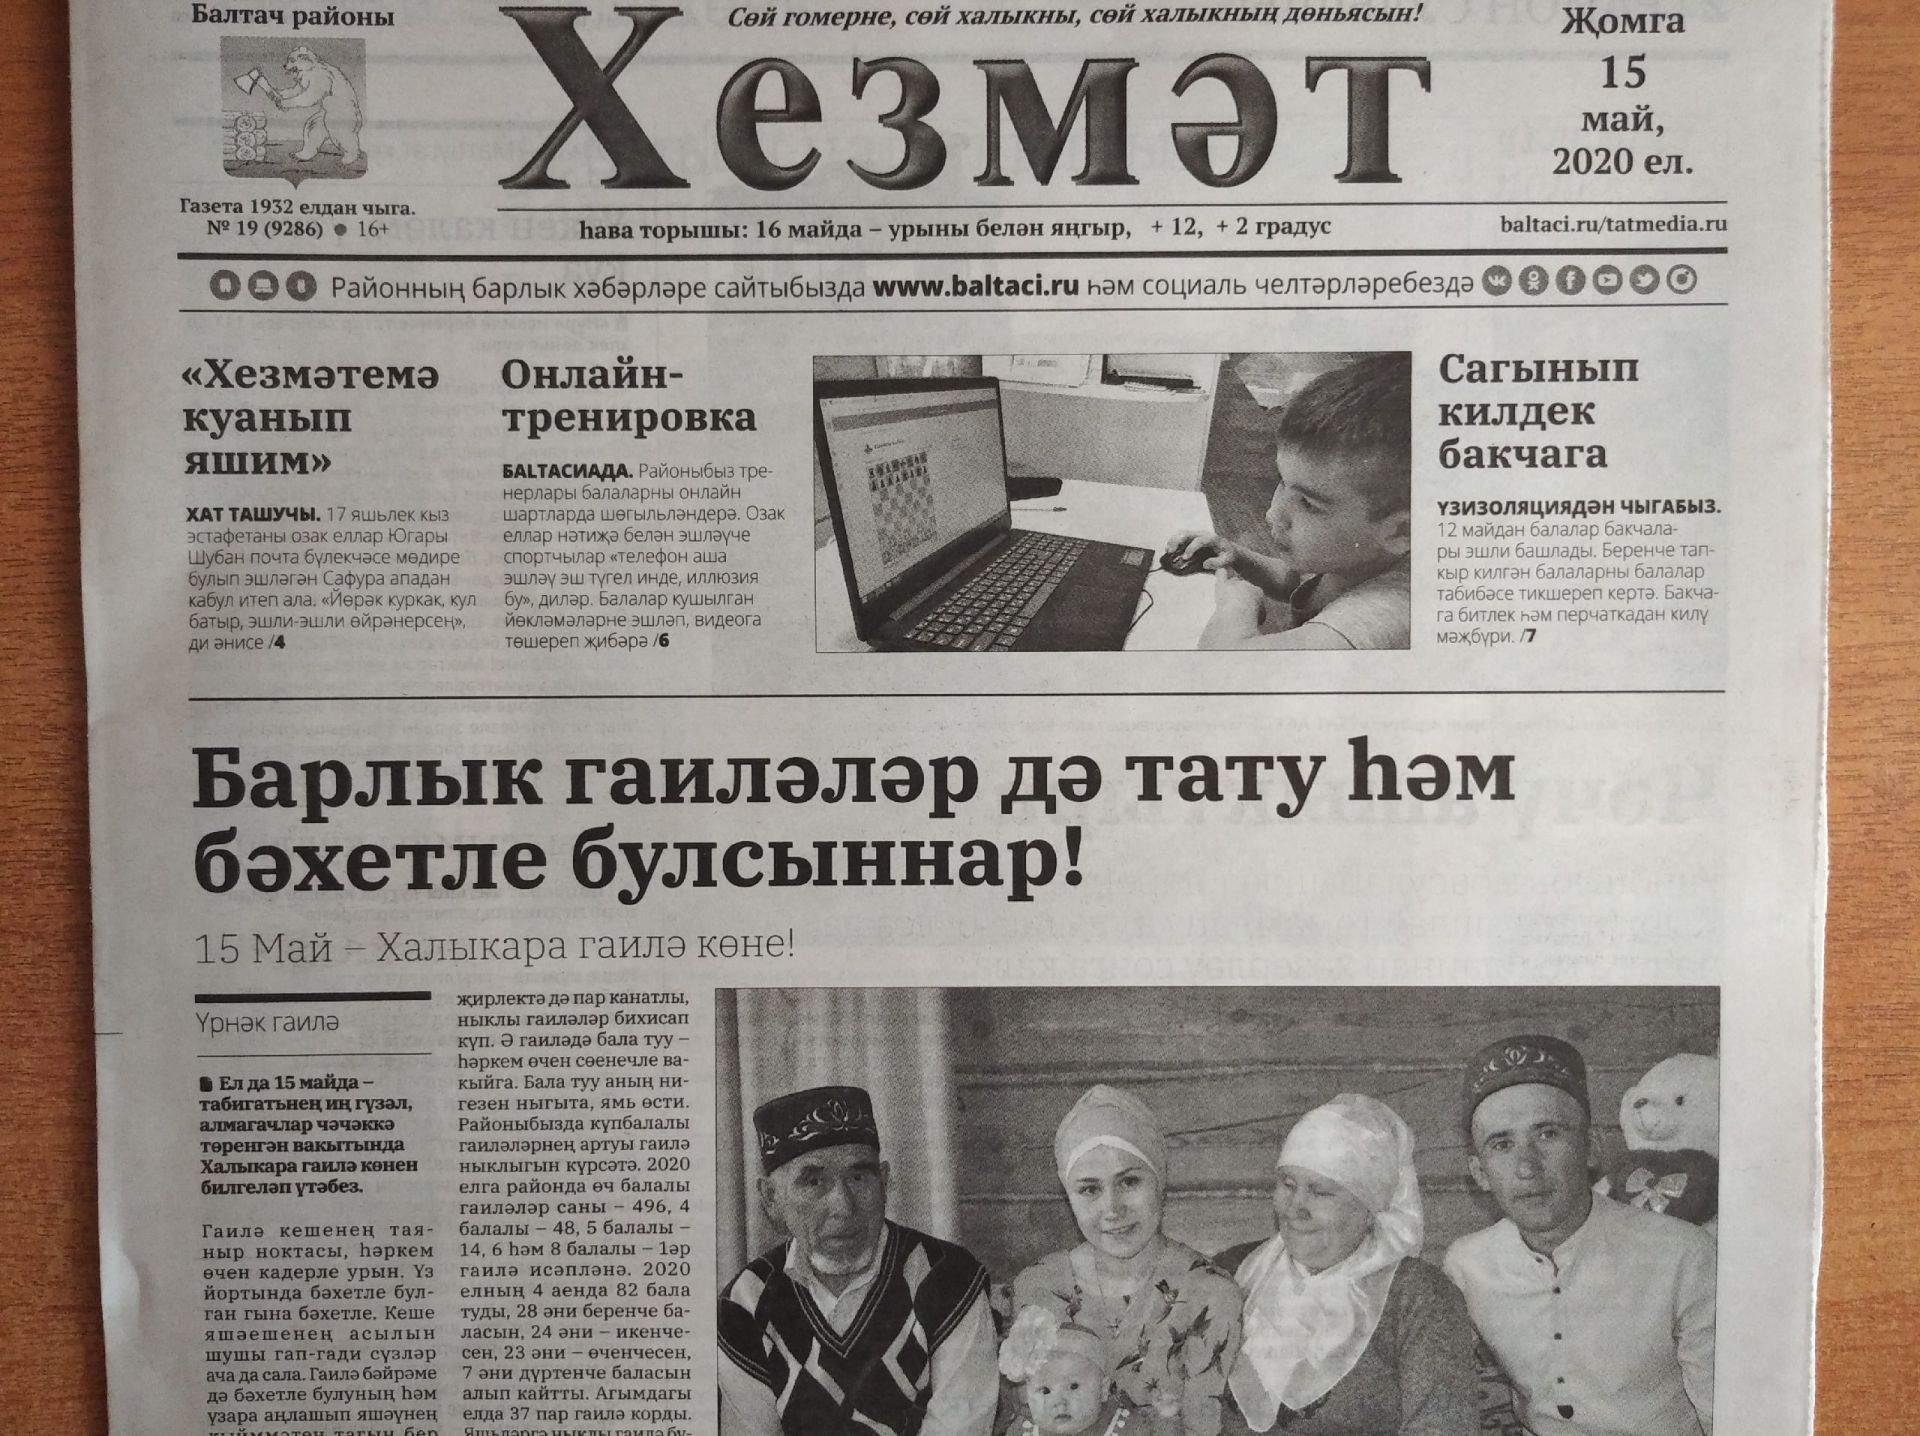 Газетаның 19нчы санында (15 май, 2020 ел) чыгарылган белдерүләр һәм рекламалар